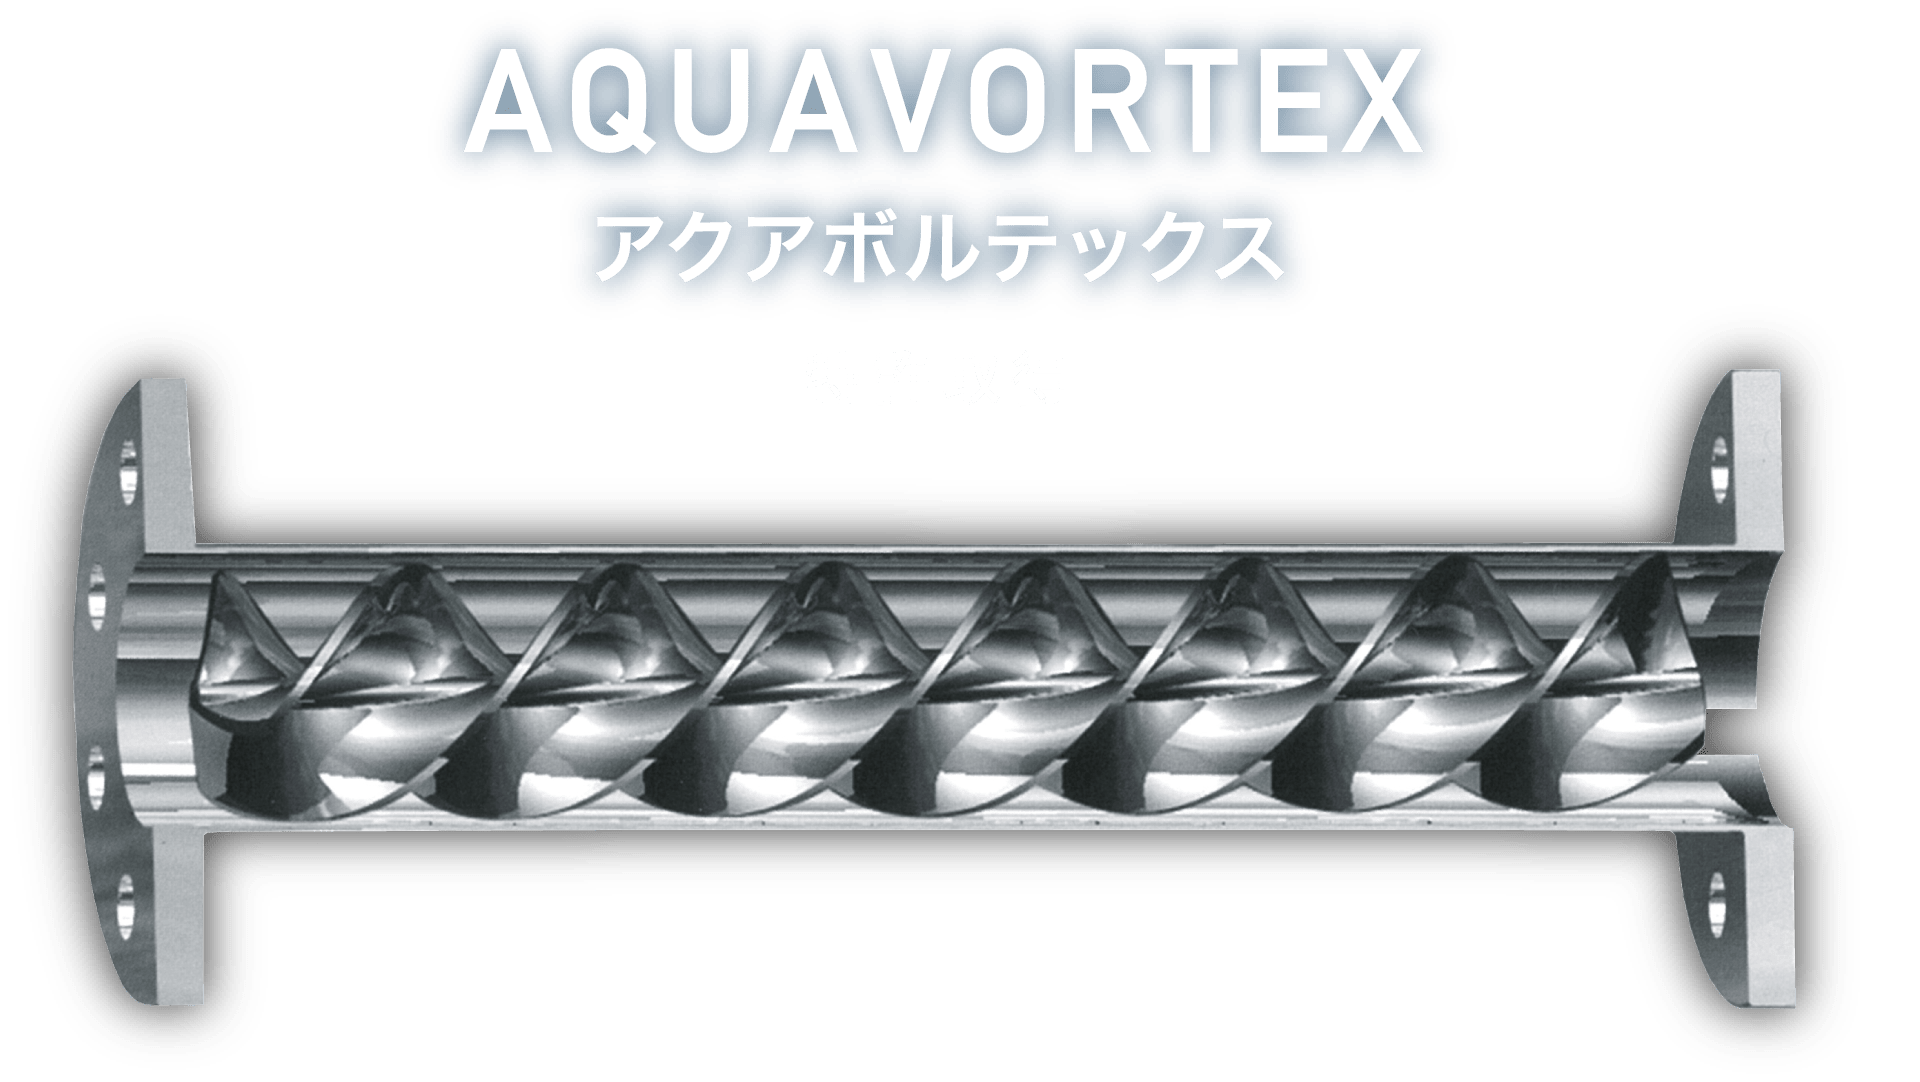 AQUAVORTEX アクアボルテックス (特許取得)